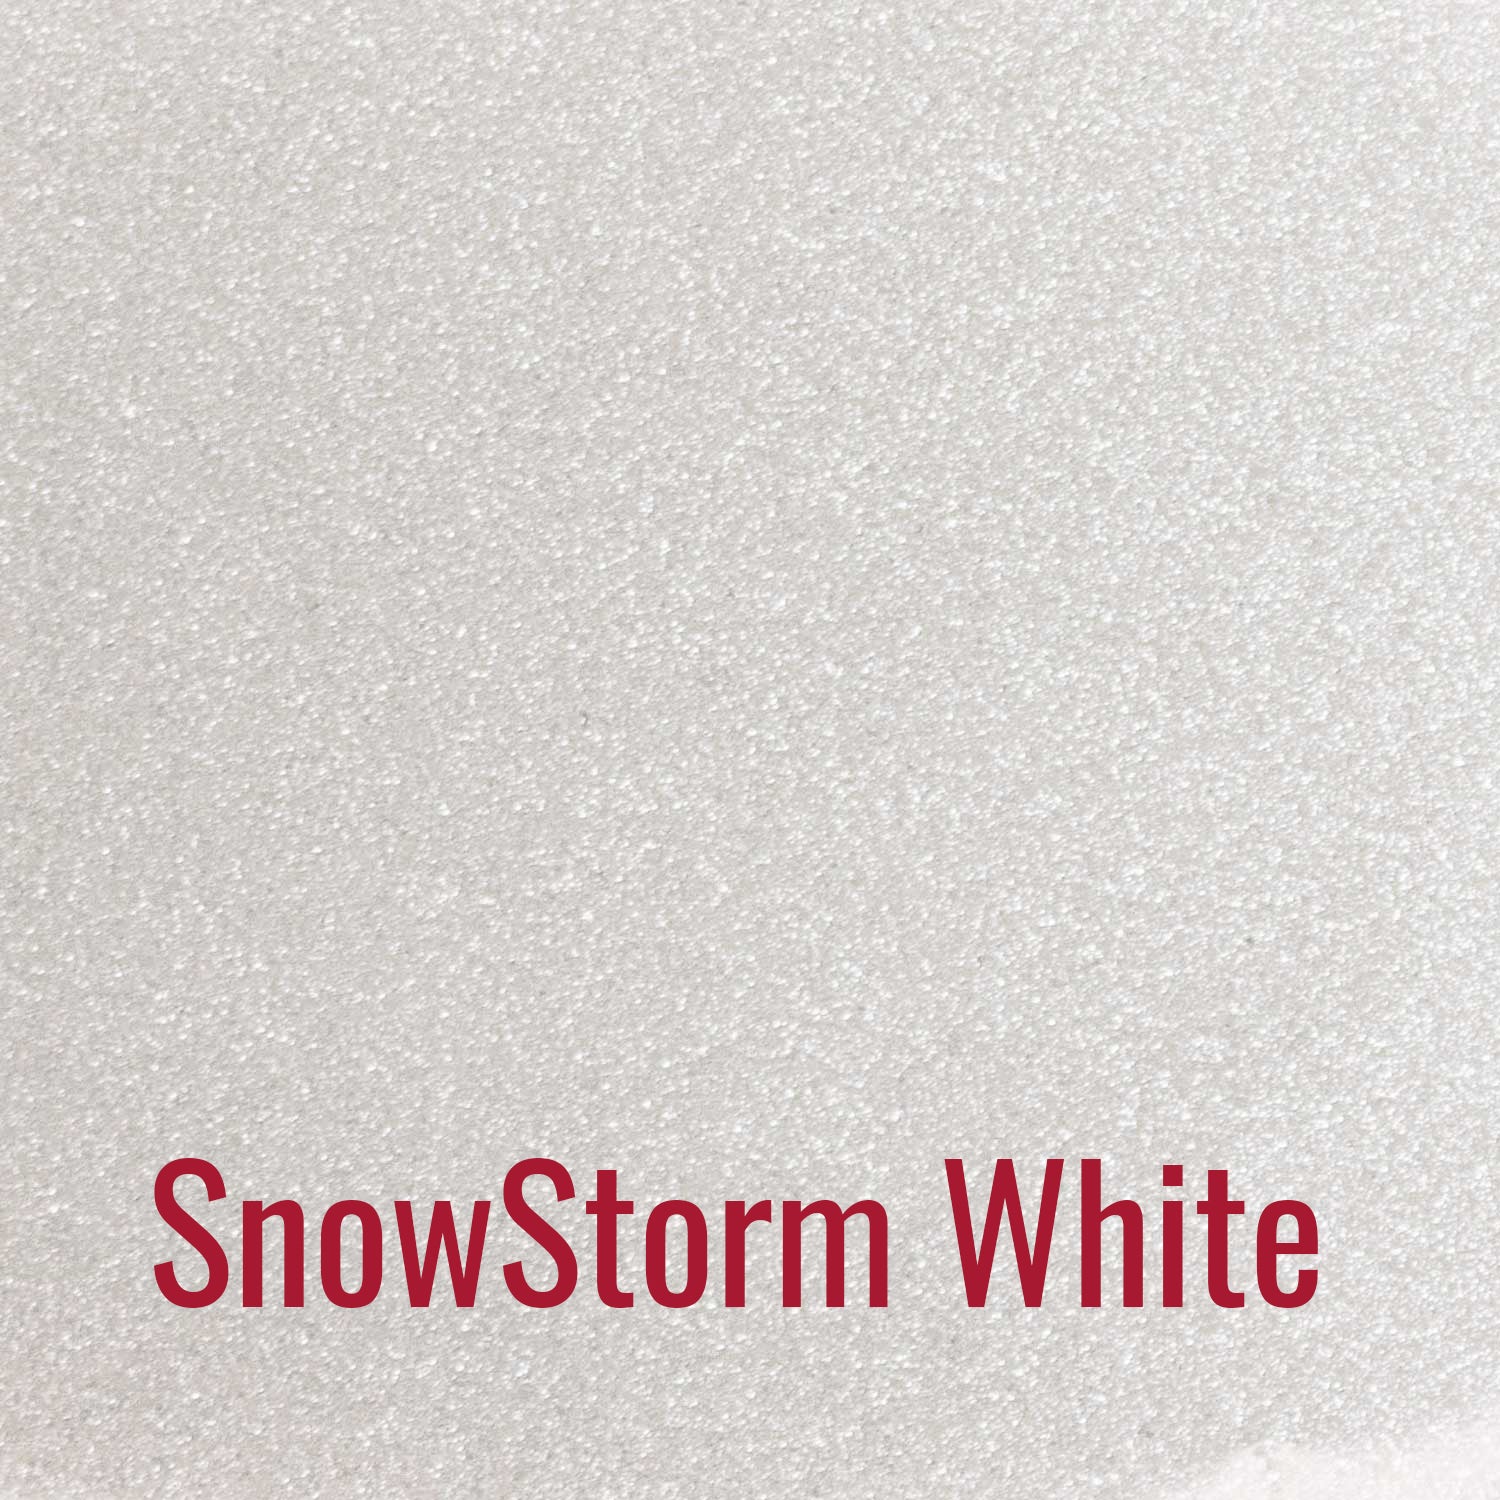 Snowstorm White Siser Sparkle Heat Transfer Vinyl (HTV)